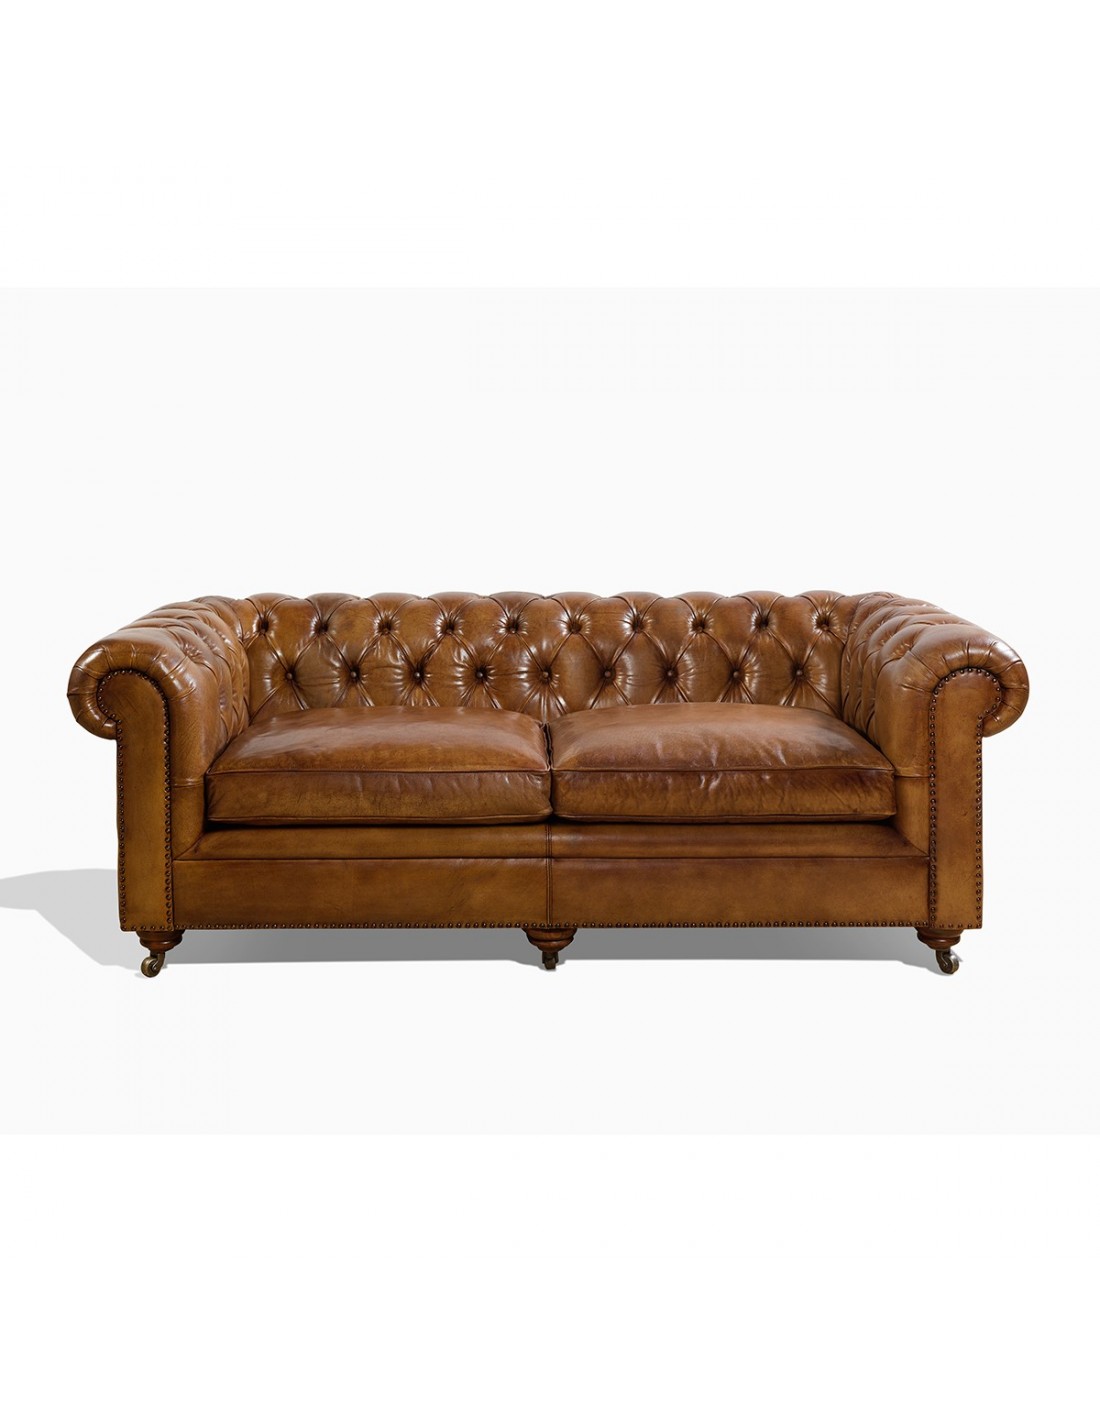 Aged Leather Sofa